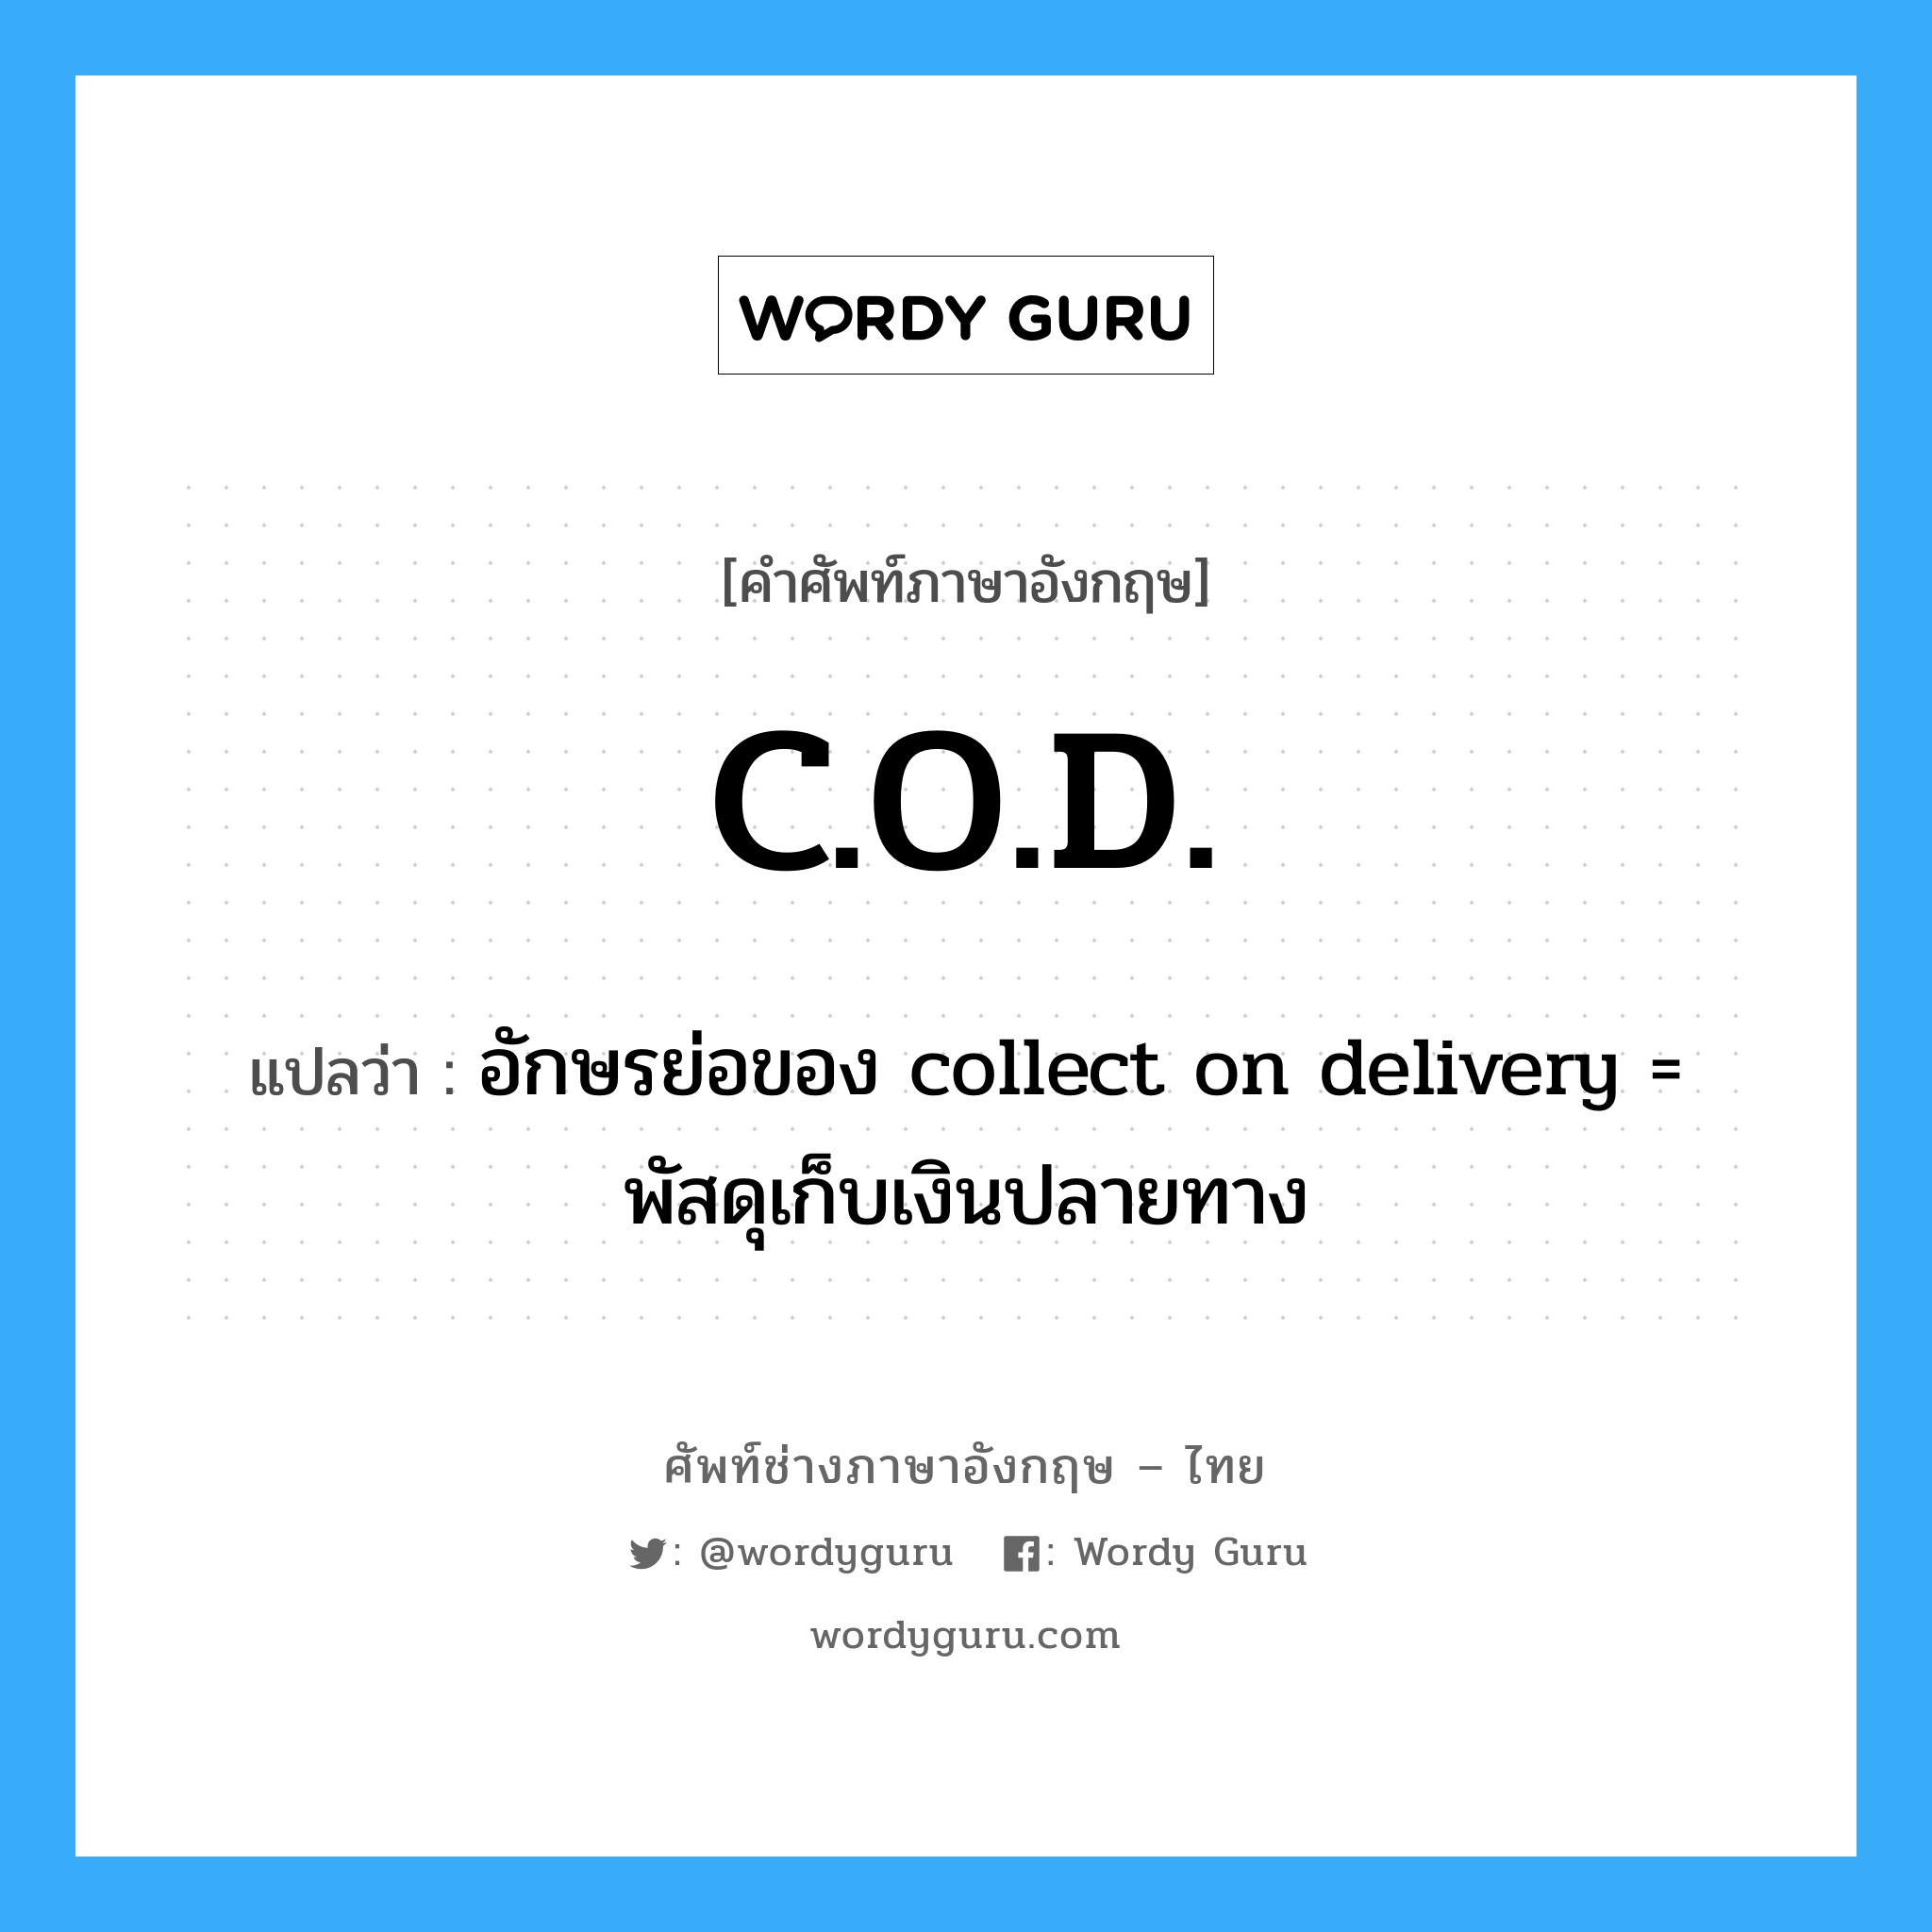 อักษรย่อของ collect on delivery = พัสดุเก็บเงินปลายทาง ภาษาอังกฤษ?, คำศัพท์ช่างภาษาอังกฤษ - ไทย อักษรย่อของ collect on delivery = พัสดุเก็บเงินปลายทาง คำศัพท์ภาษาอังกฤษ อักษรย่อของ collect on delivery = พัสดุเก็บเงินปลายทาง แปลว่า C.O.D.